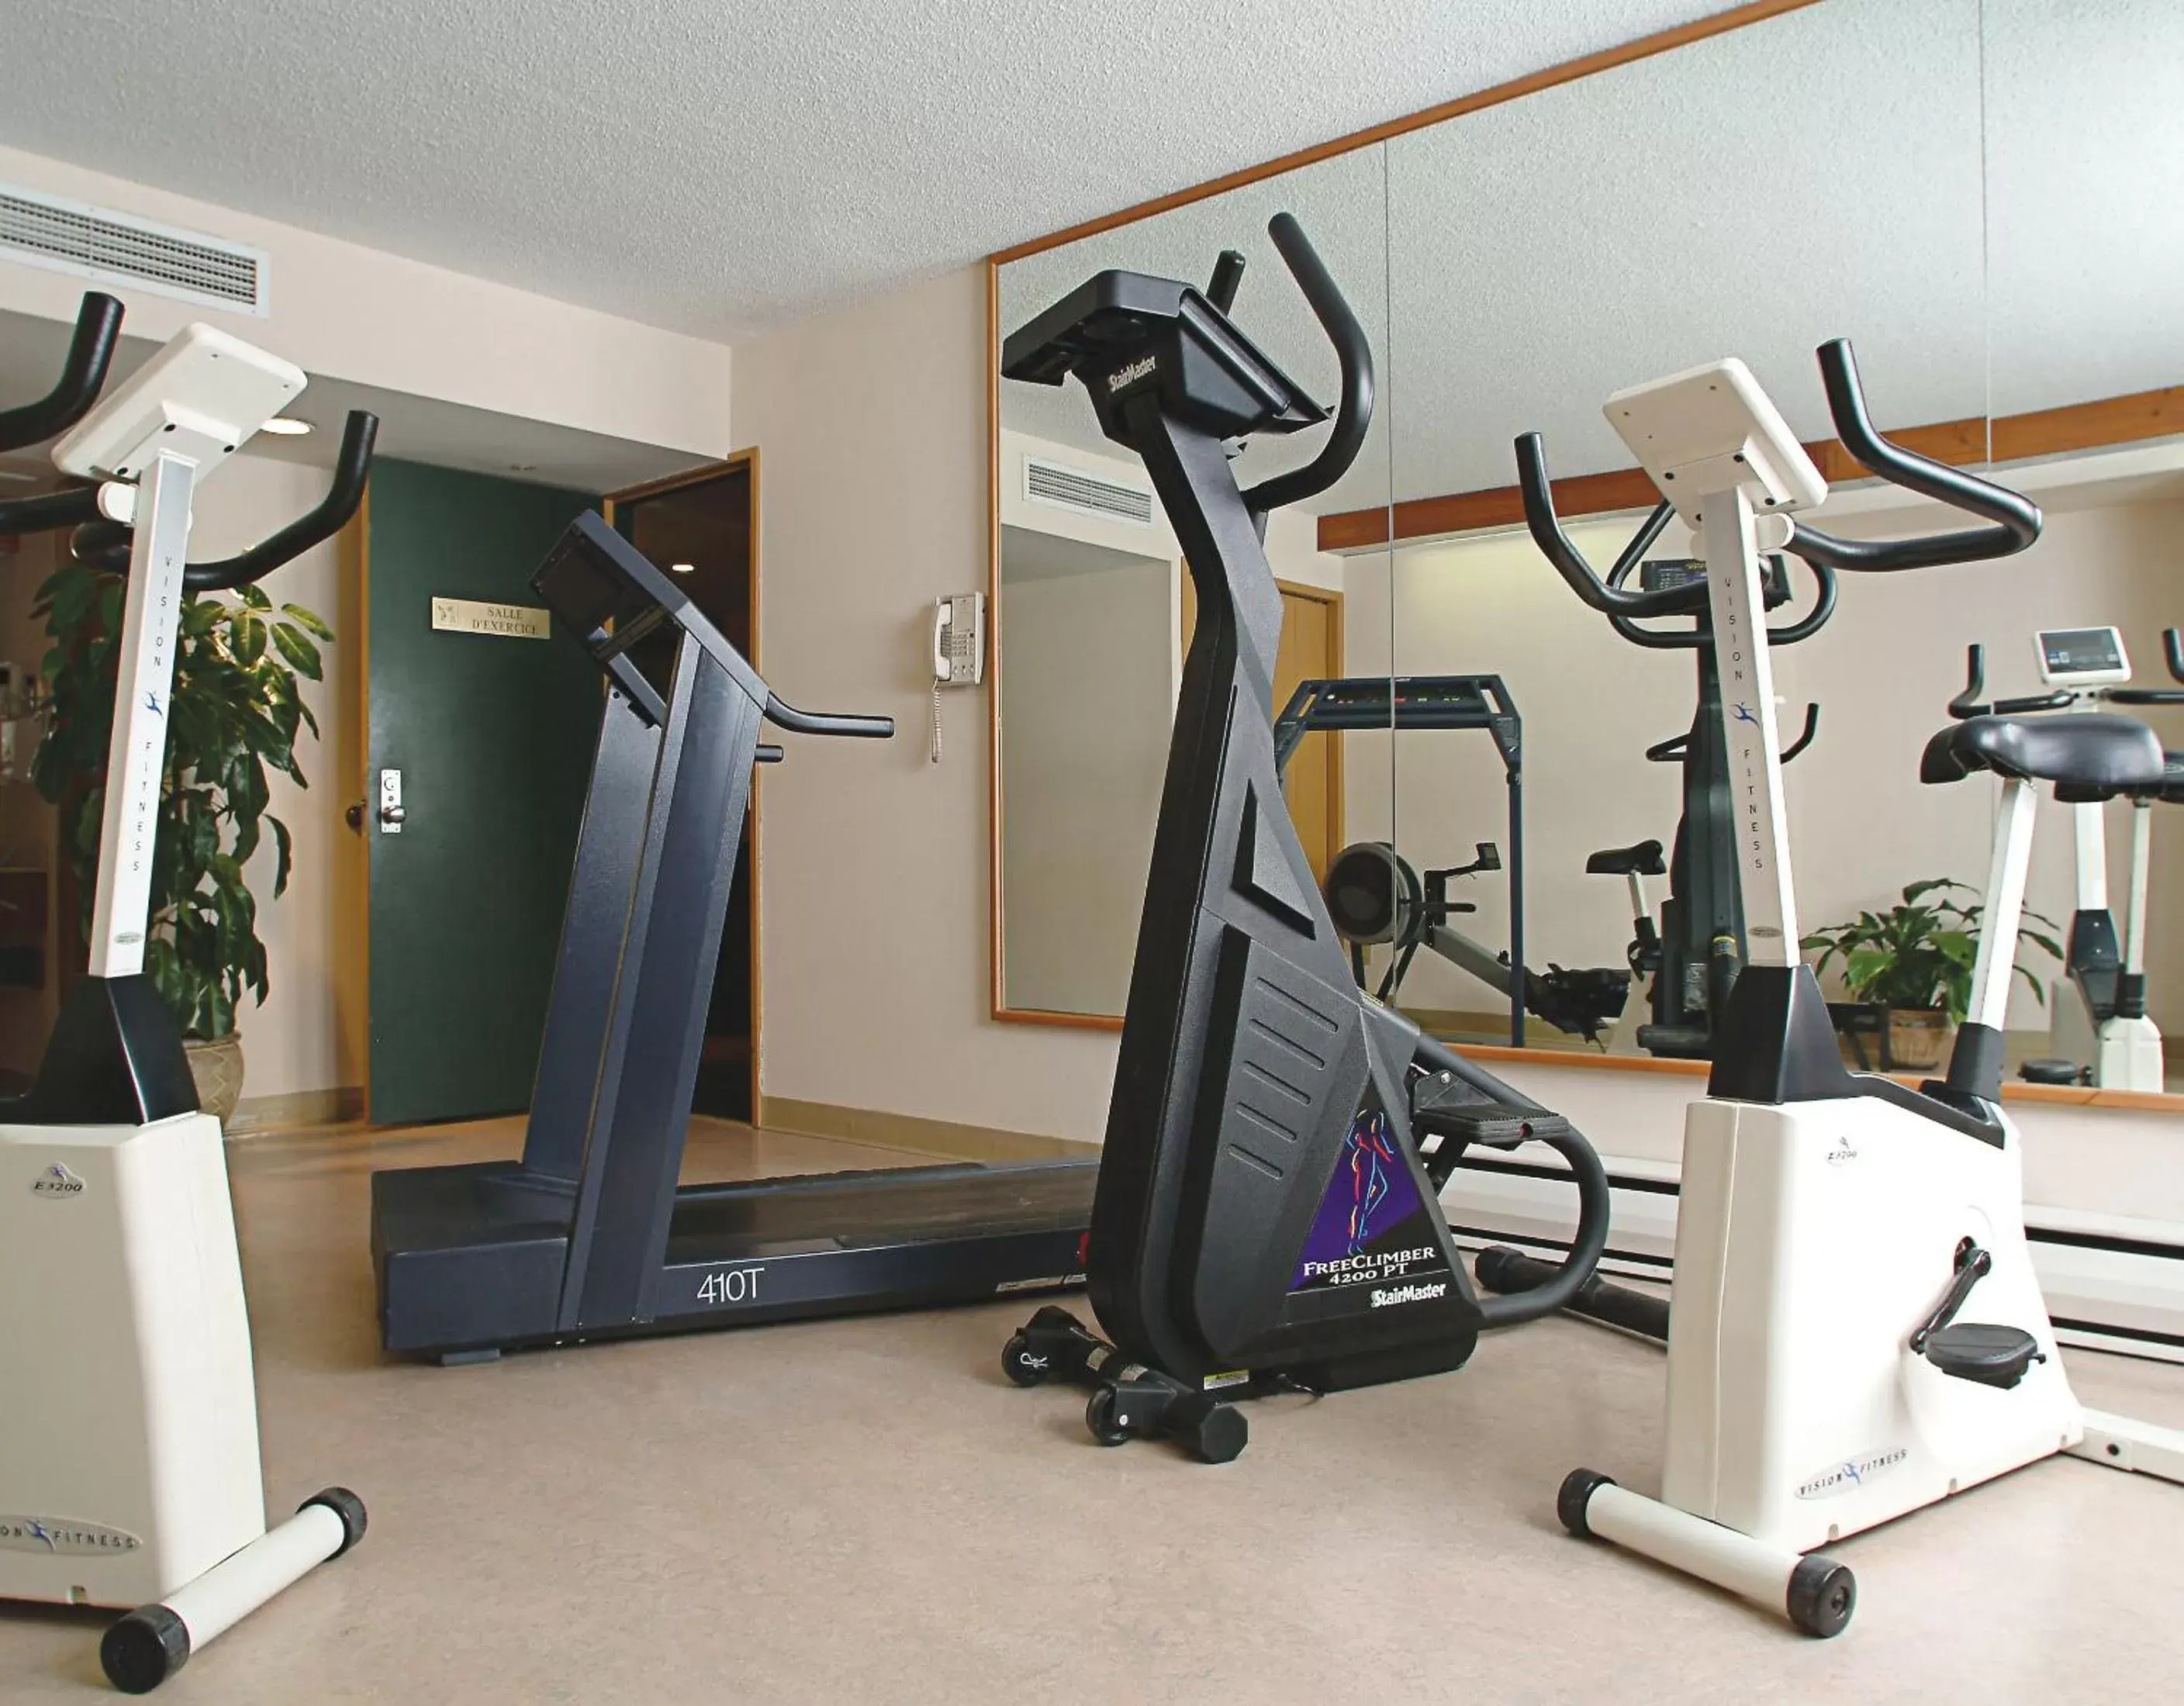 Fitness centre/facilities, Fitness Center/Facilities in Hôtels Gouverneur Trois-Rivières